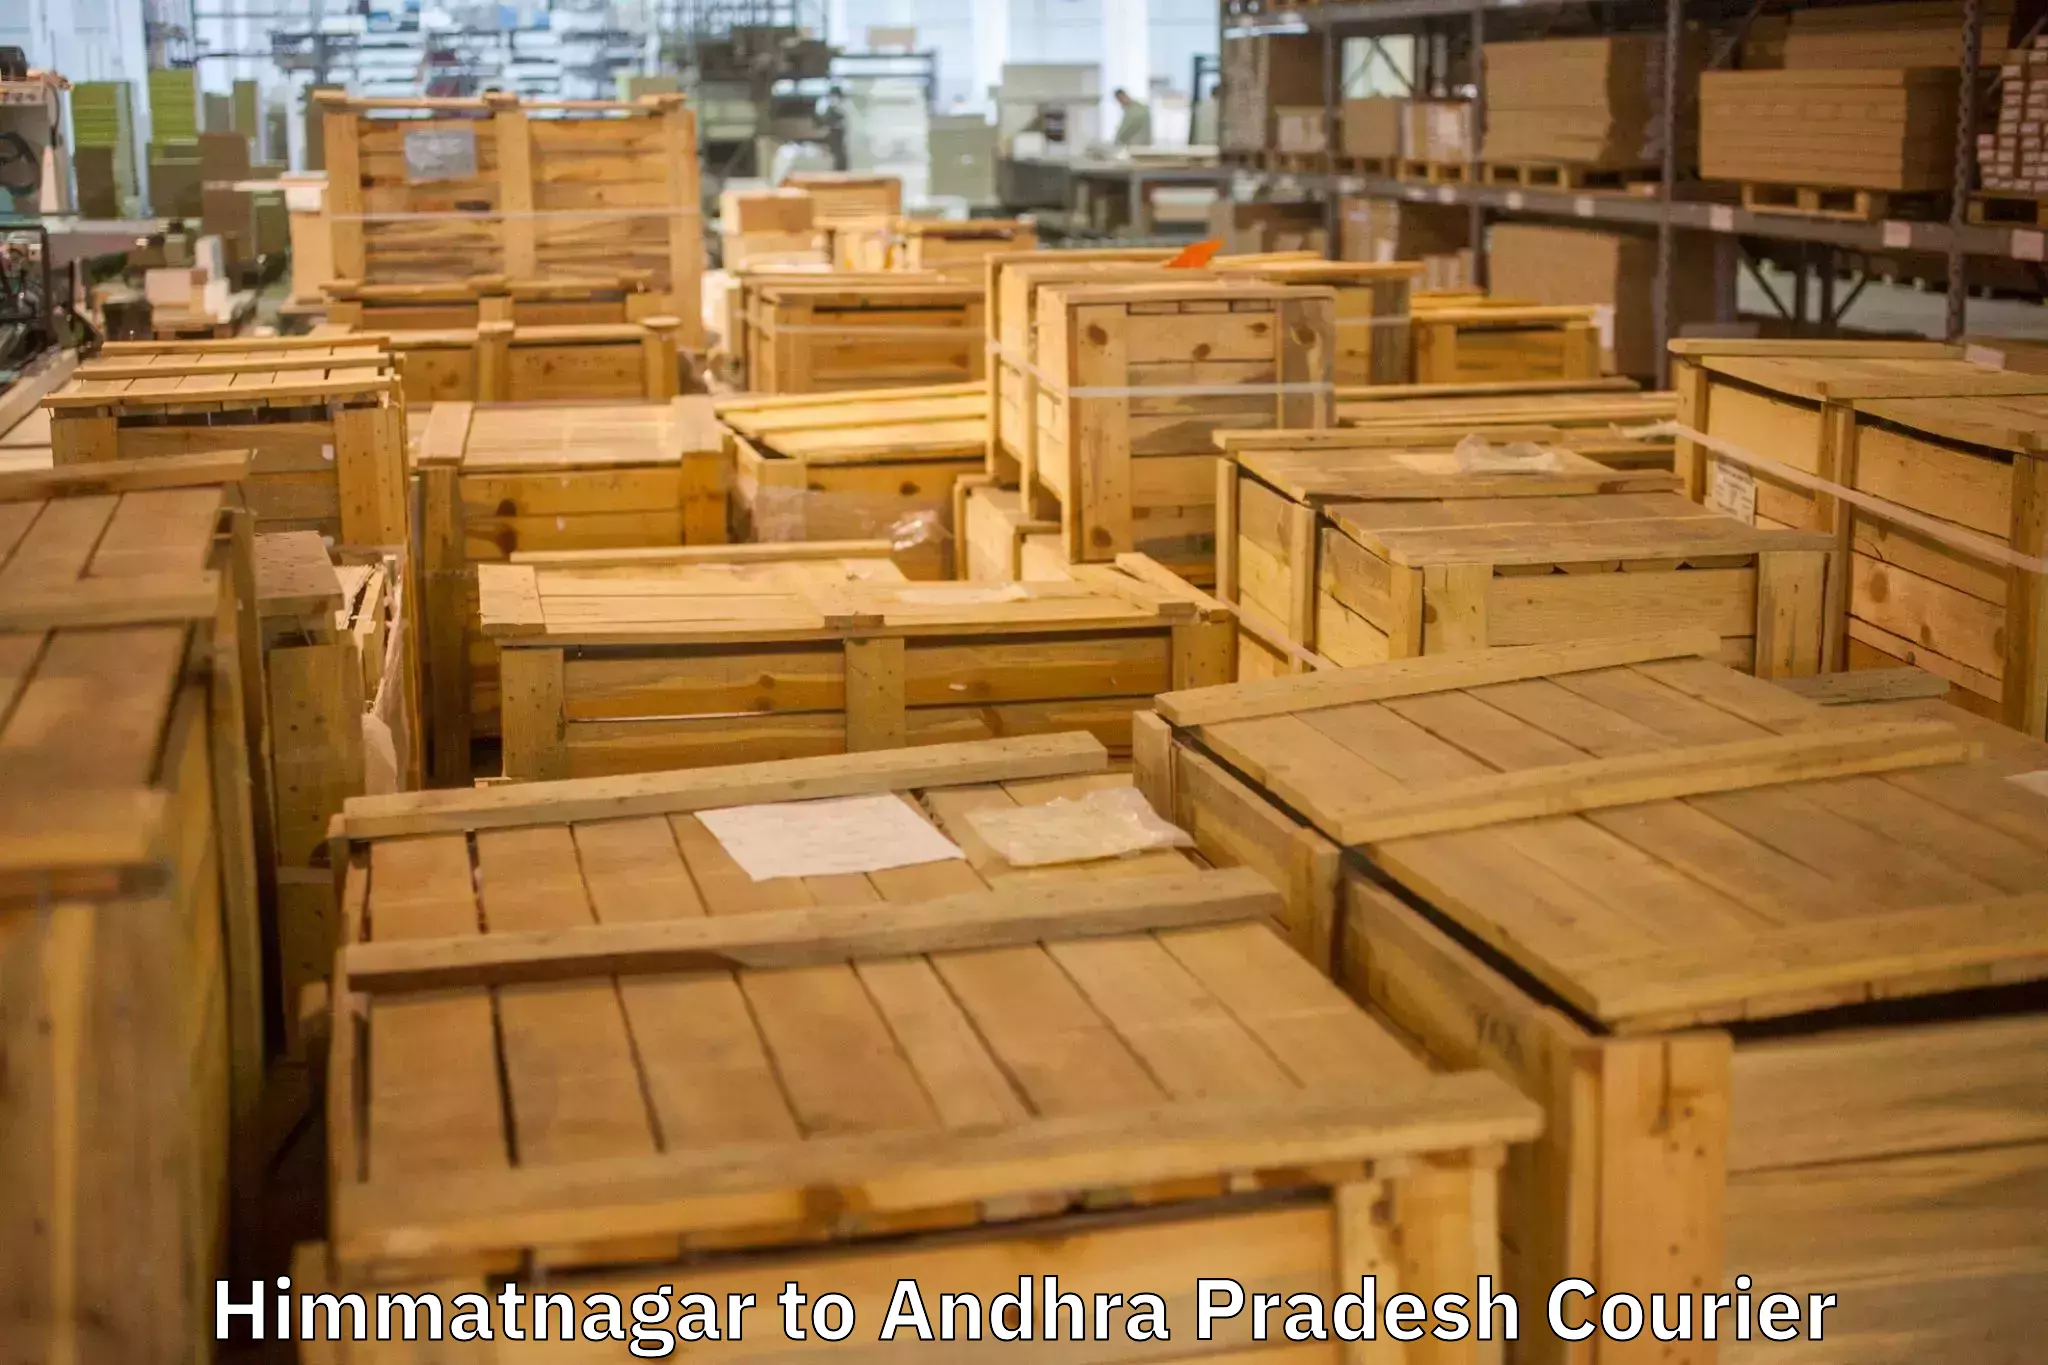 Home goods moving company Himmatnagar to Andhra Pradesh